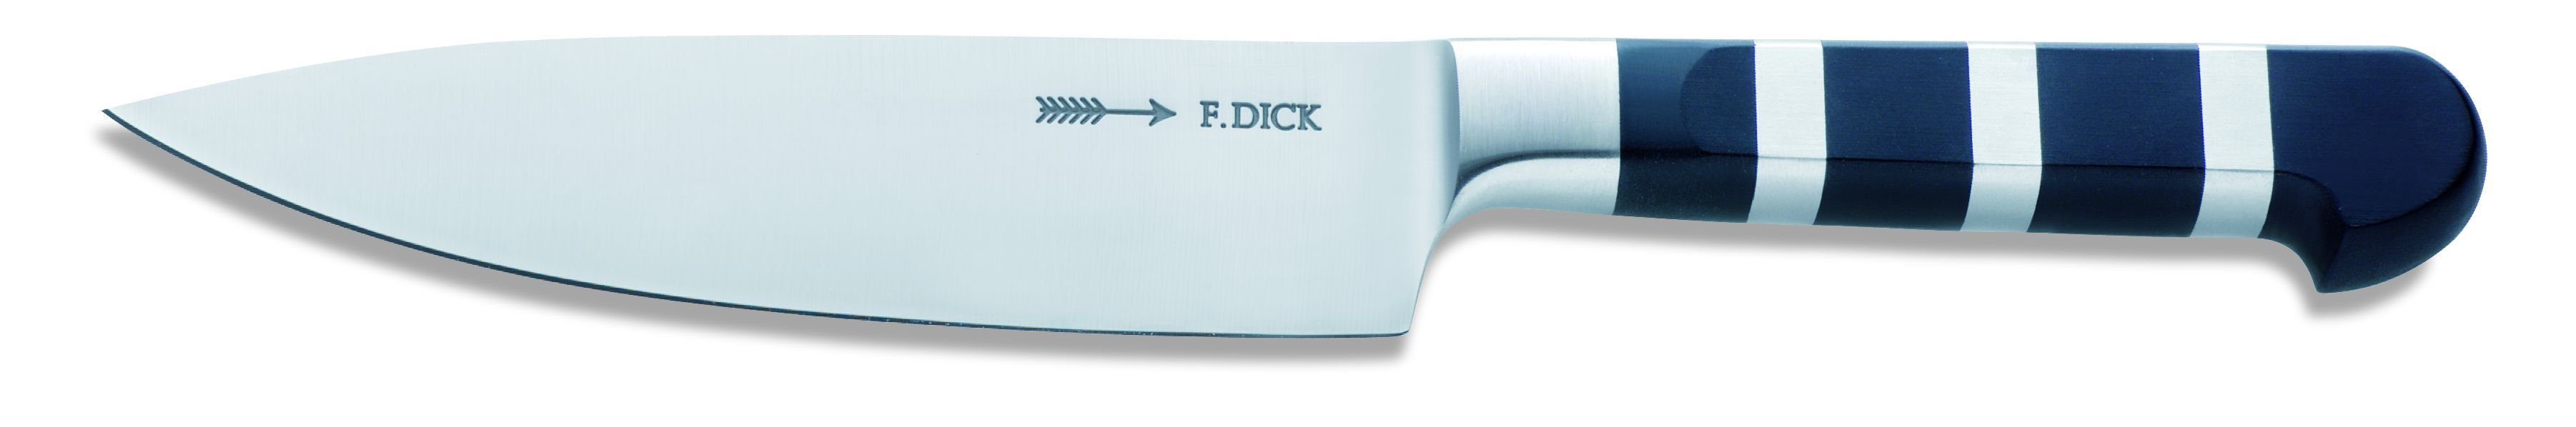 F. DICK Kochmesser Dick Küchenmesser 1905, Messer 15 cm Klinge, Kochmesser Stahl